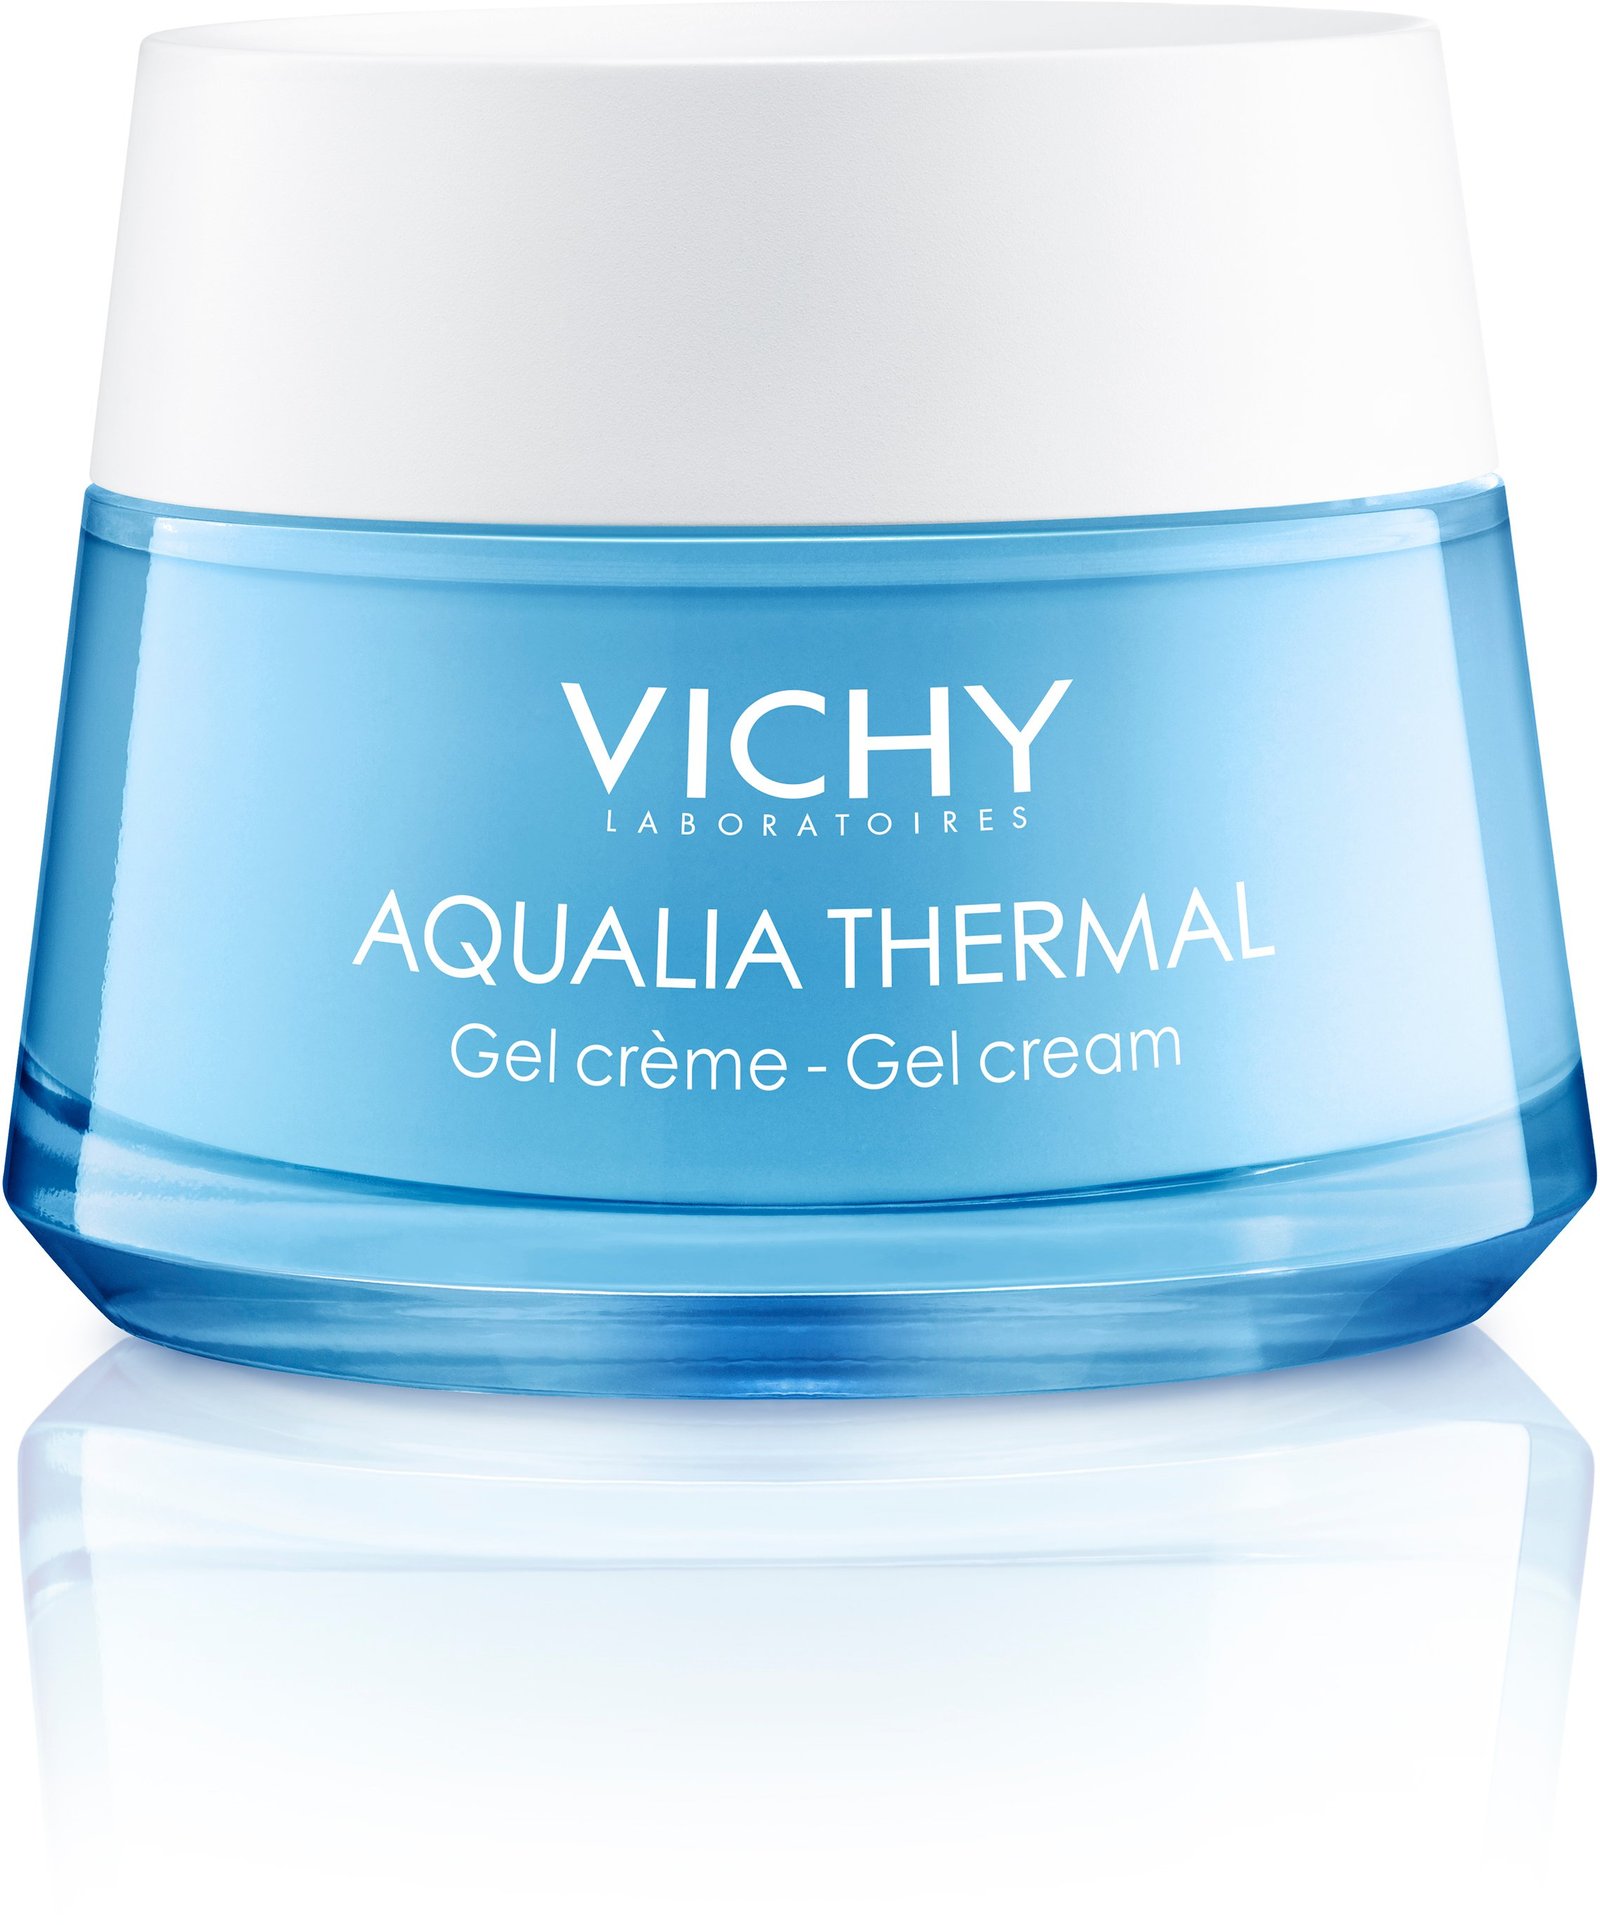 Vichy Aqualia Thermal Rehydrating Gel 50 ml